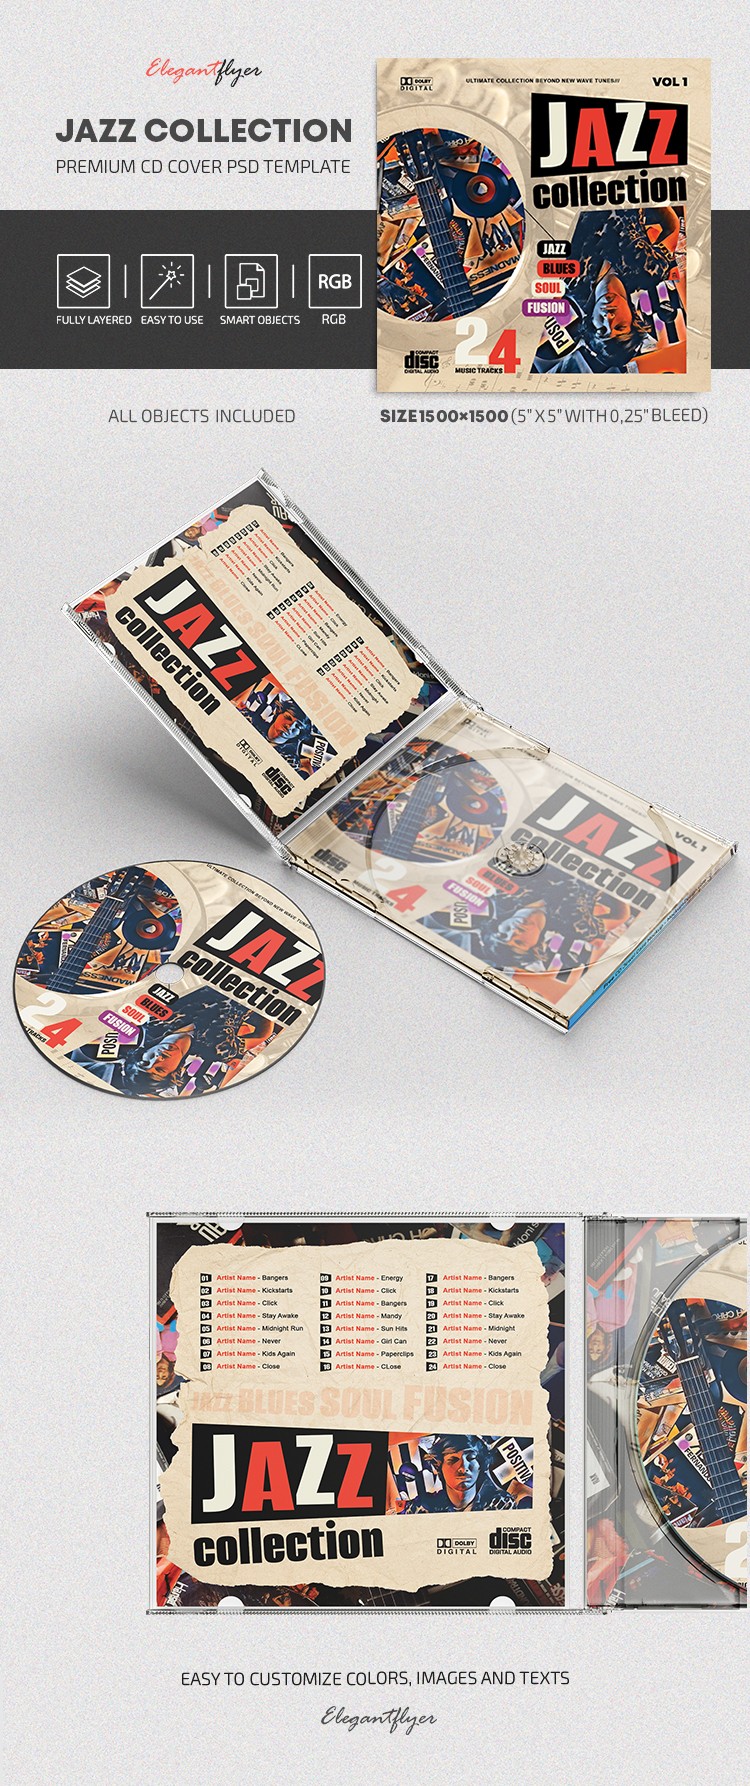 Okładka CD Jazz Collection by ElegantFlyer